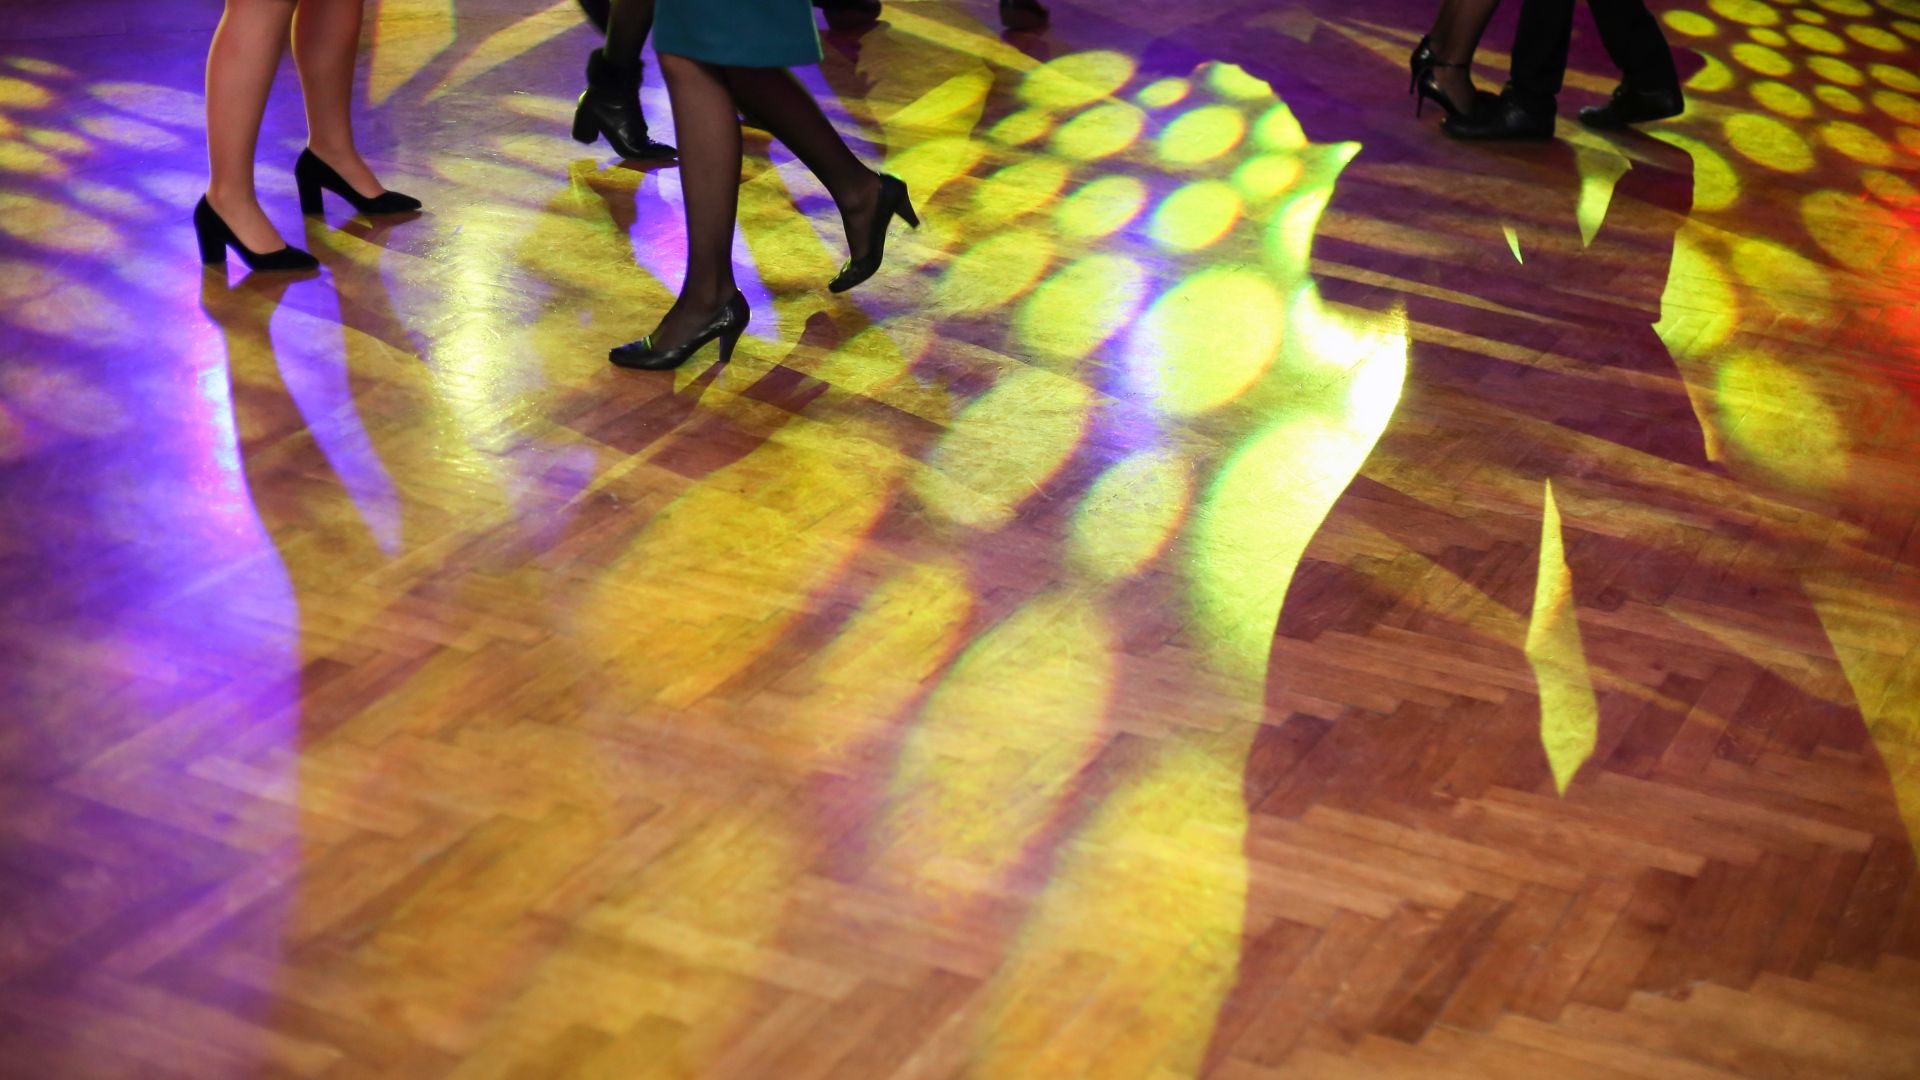 Illuminated Dance Floor Tiles